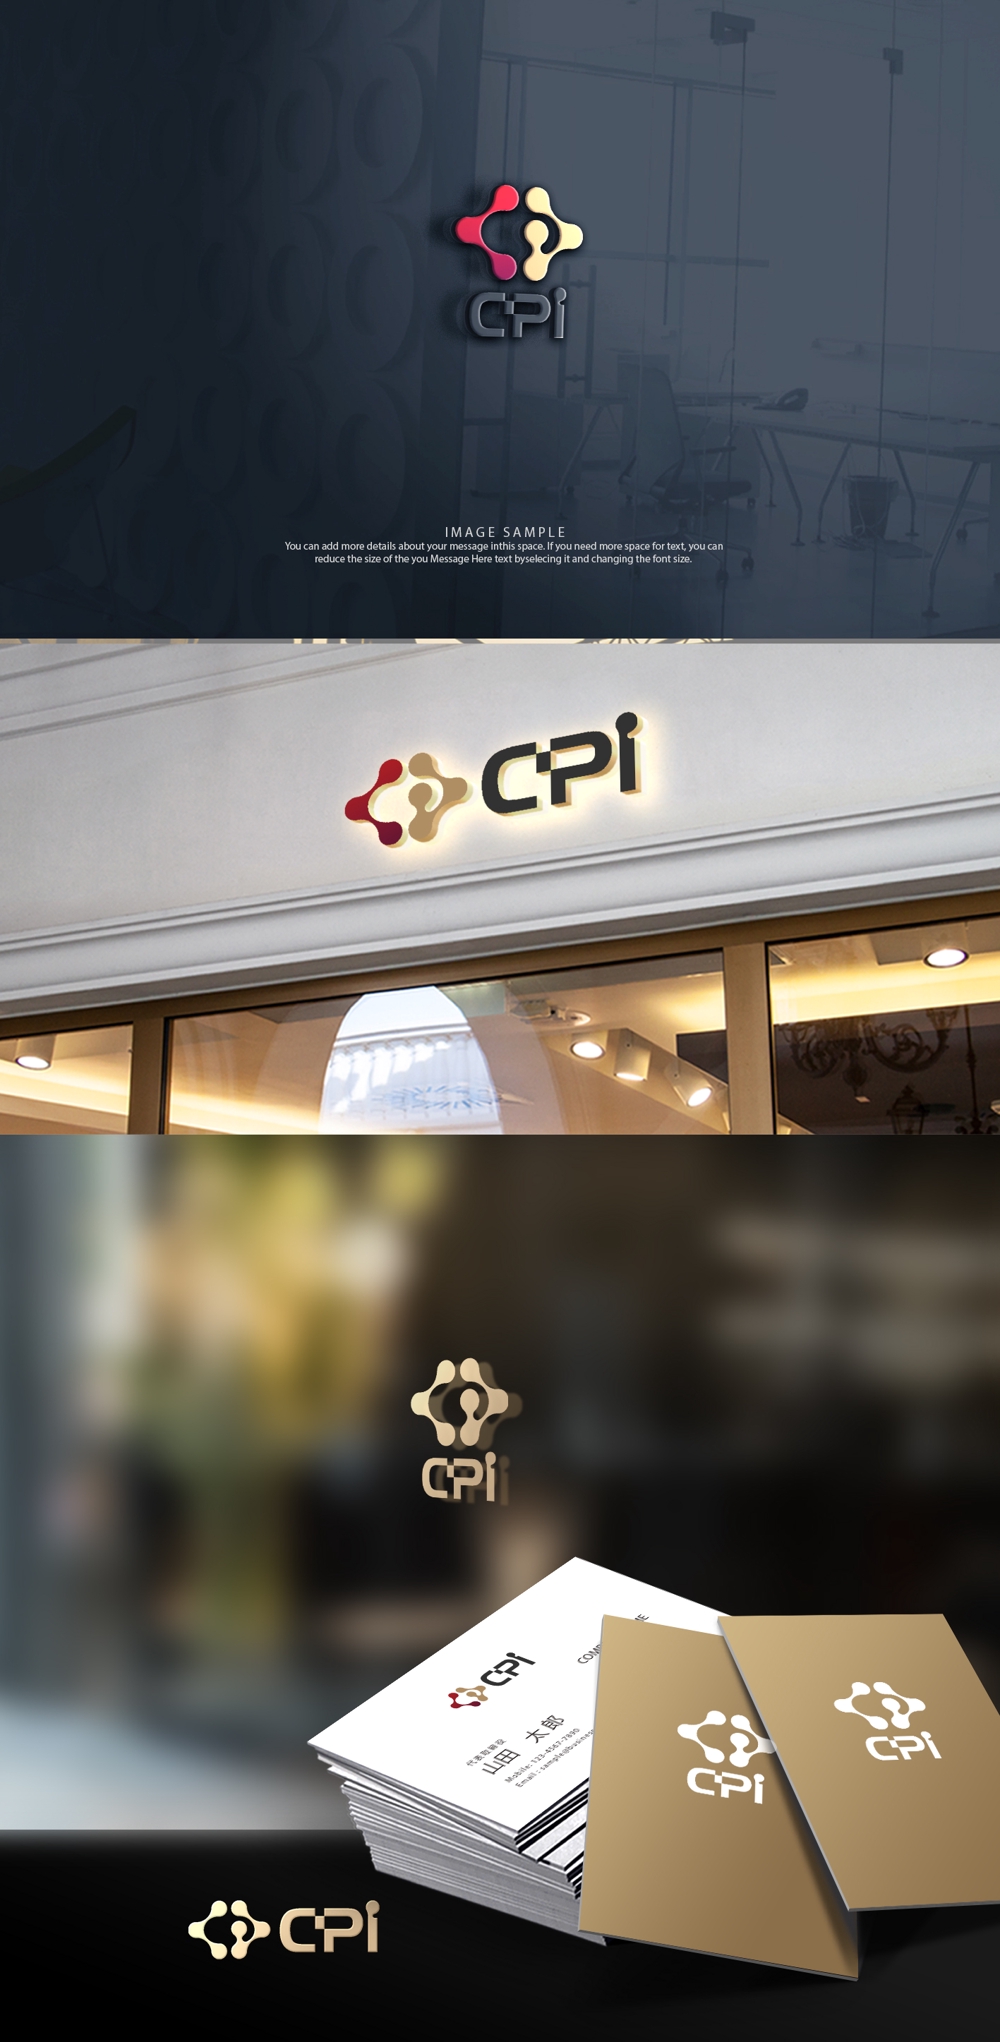 プロテインの商品名「CPI」のロゴ